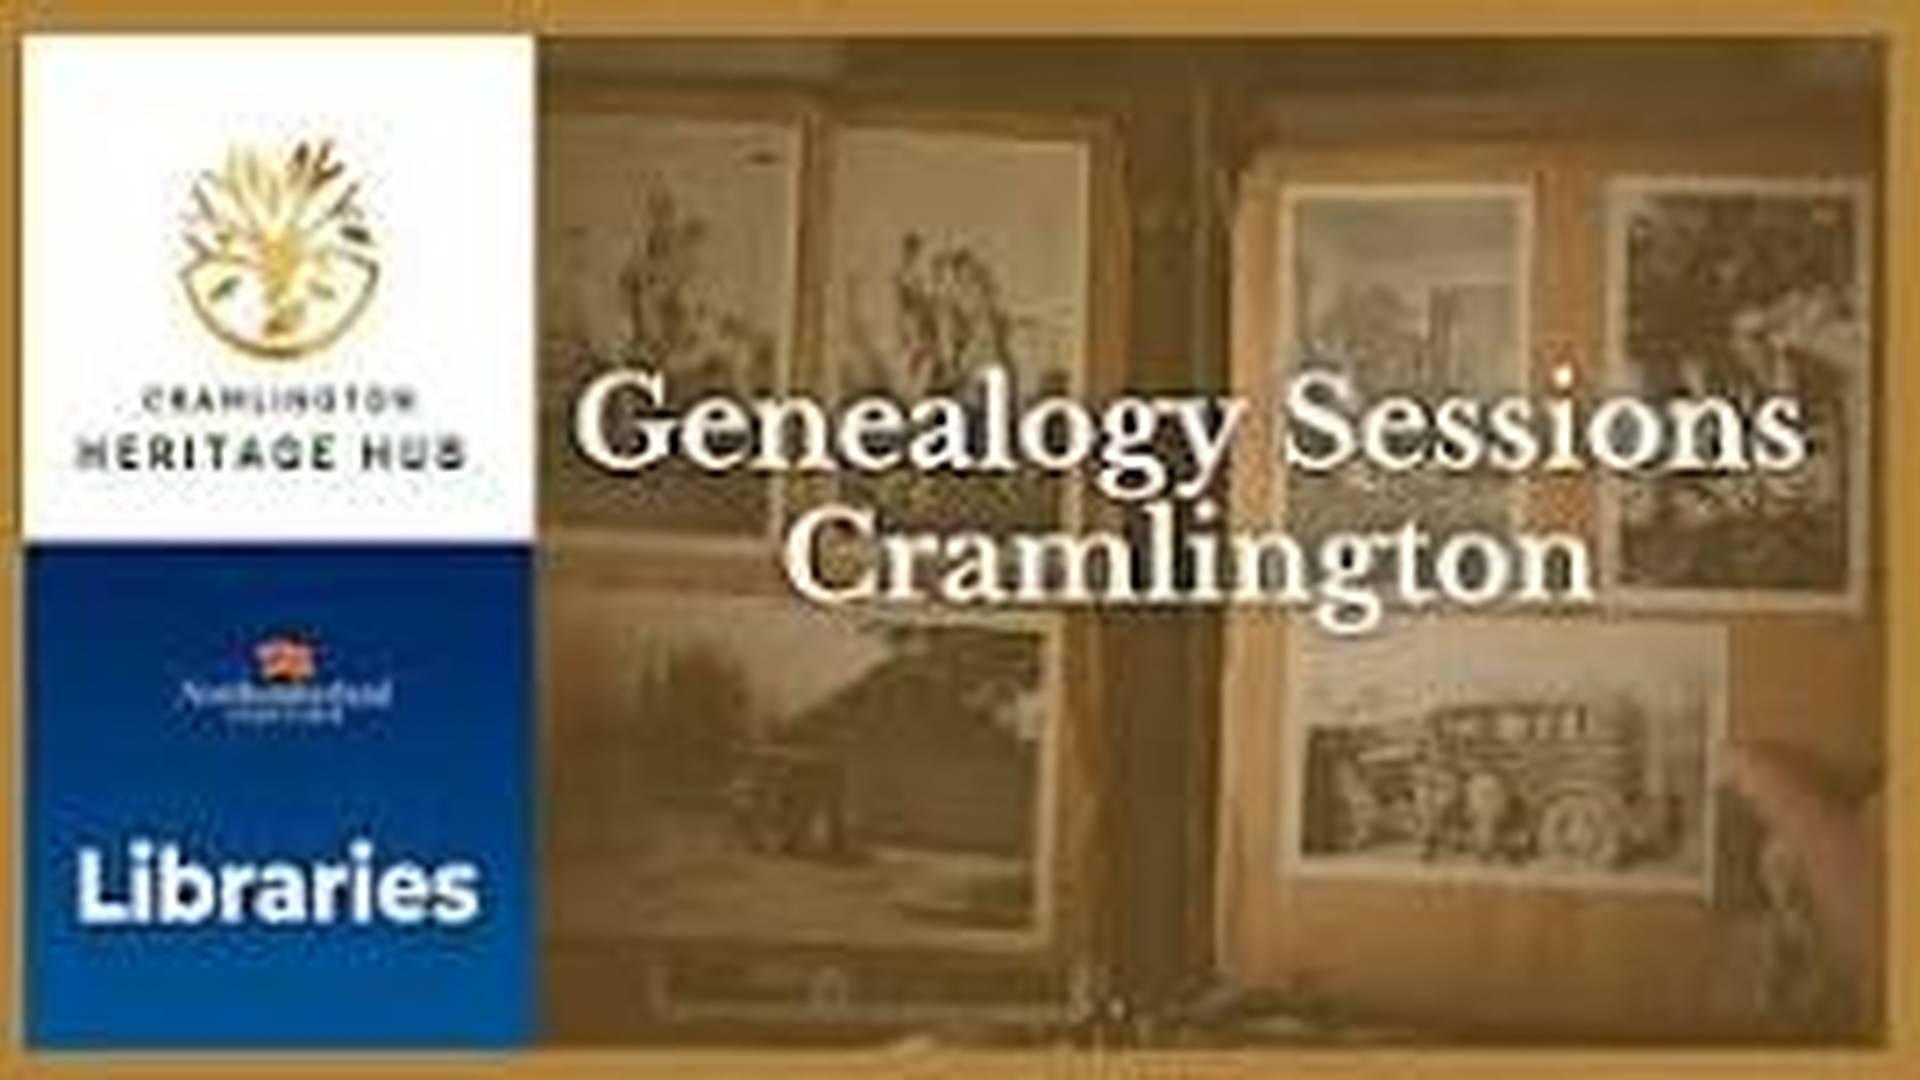 Cramlington Library - Genealogy Sessions photo